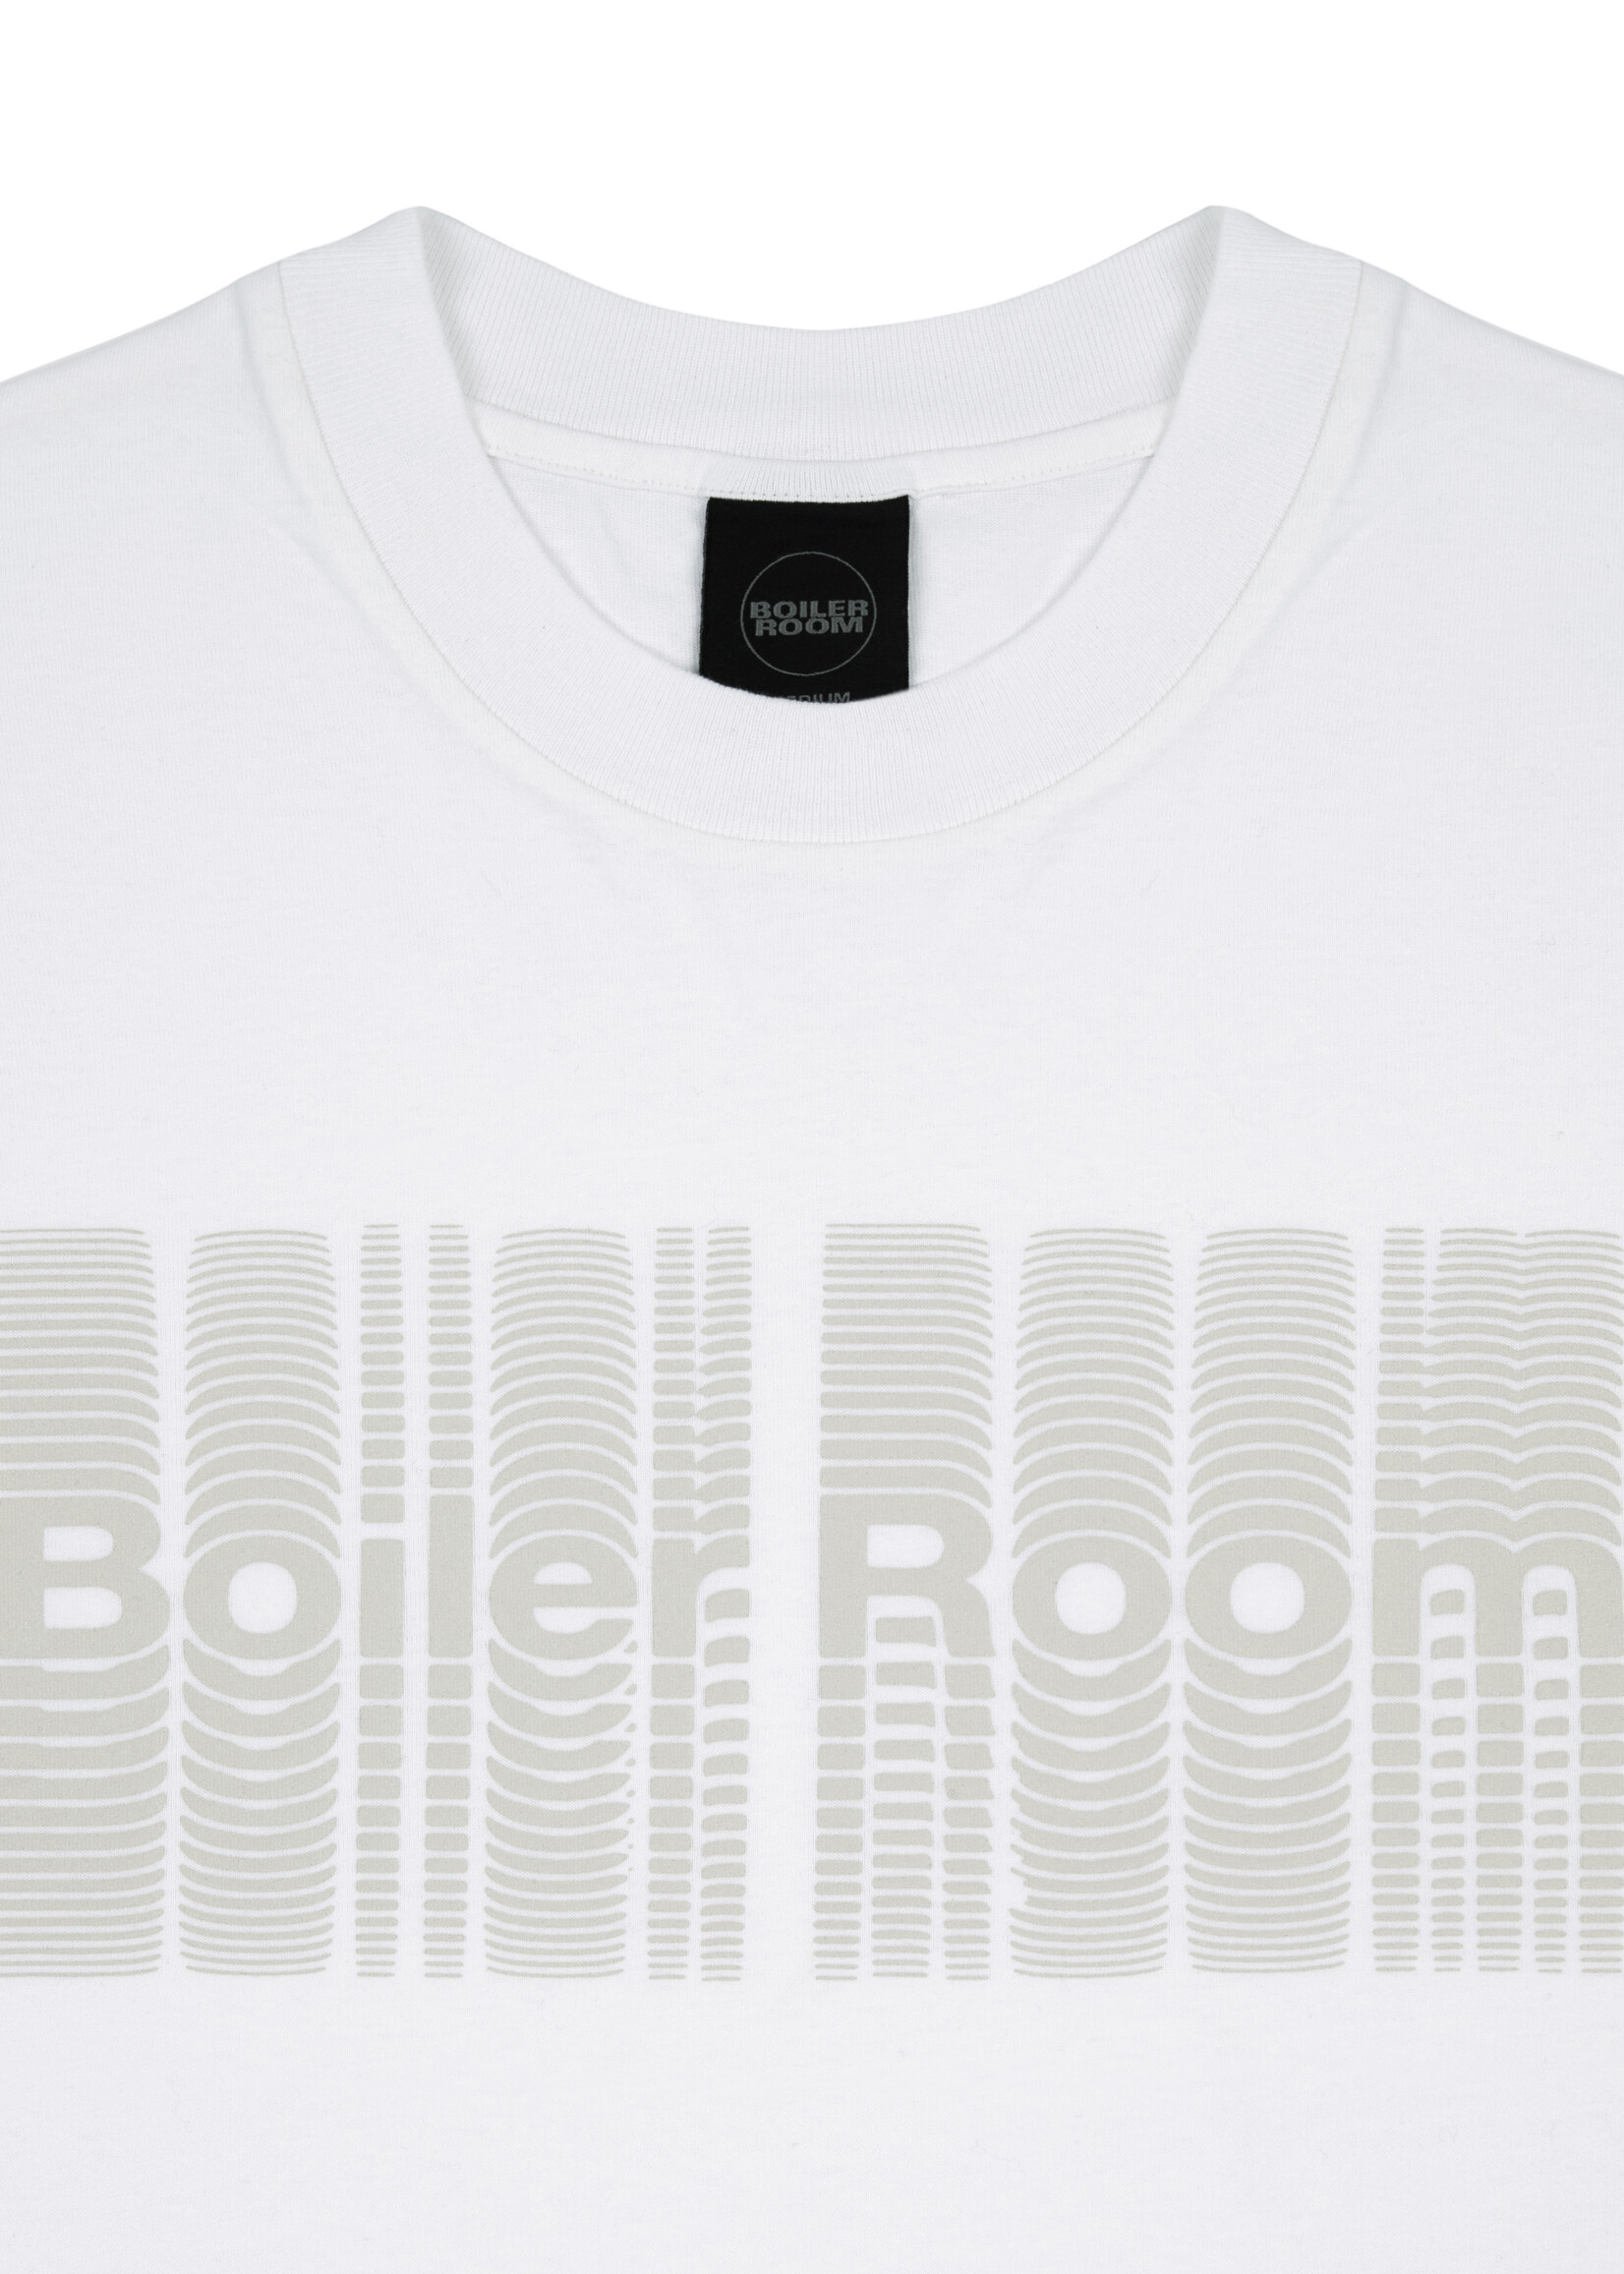 BOILER ROOM Reverb T-shirt in White